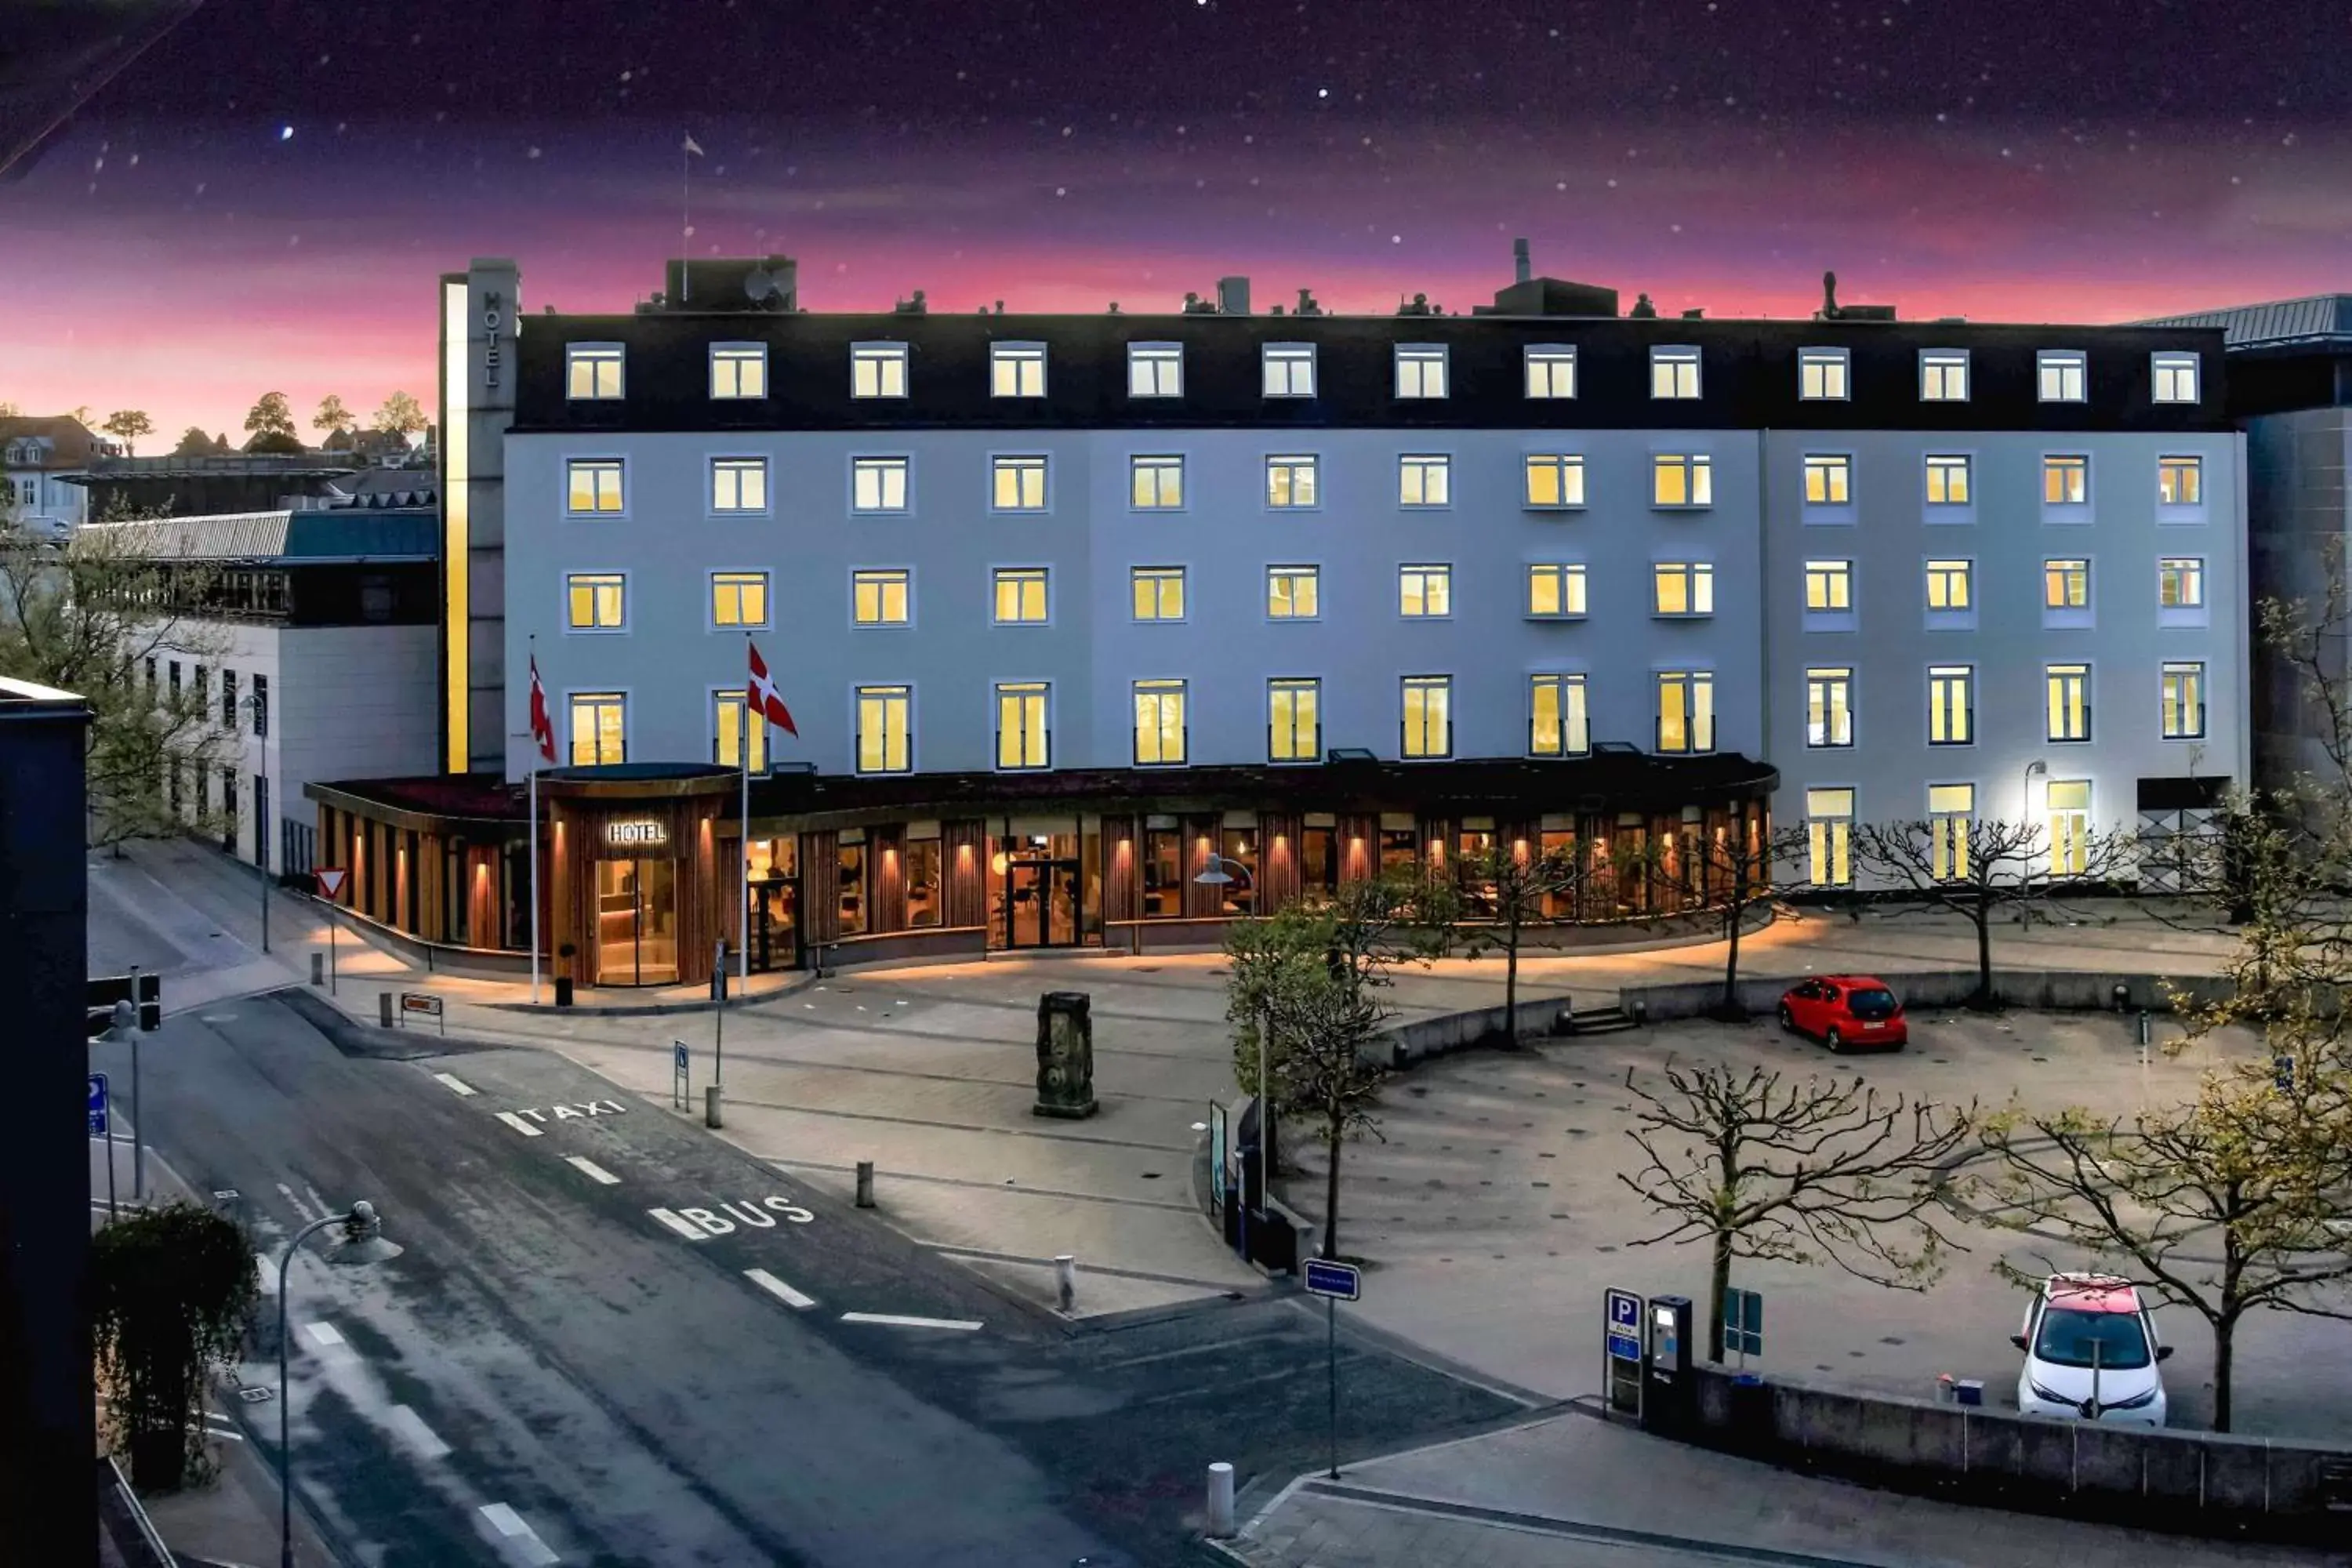 Property Building in Best Western Plus Hotel Svendborg